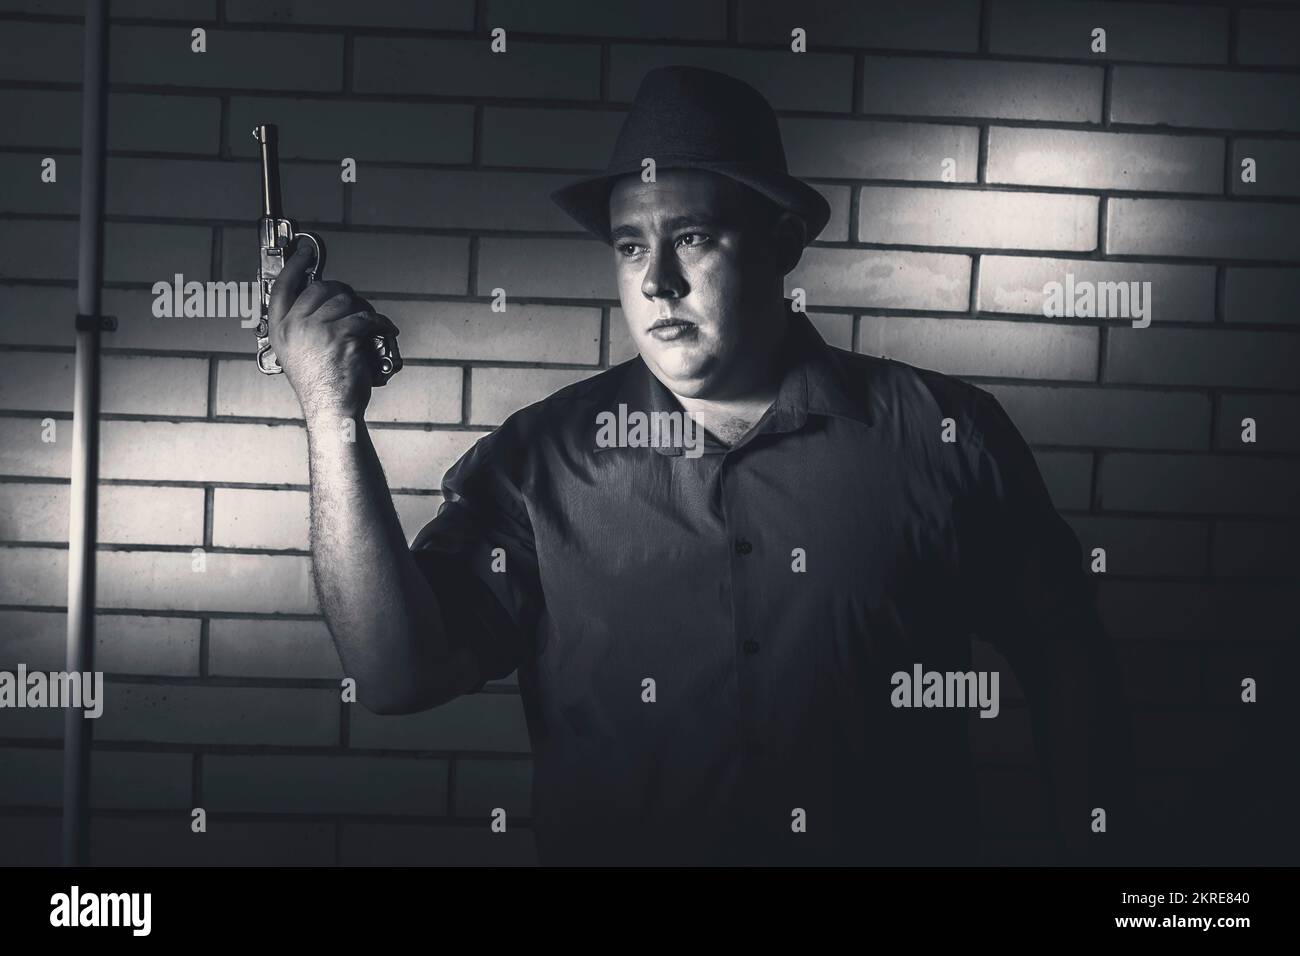 Immagine ciano scuro di un uomo gangster arrendendo durante armato holdup quando catturato rosshanded nei fari dell'oscurità Foto Stock